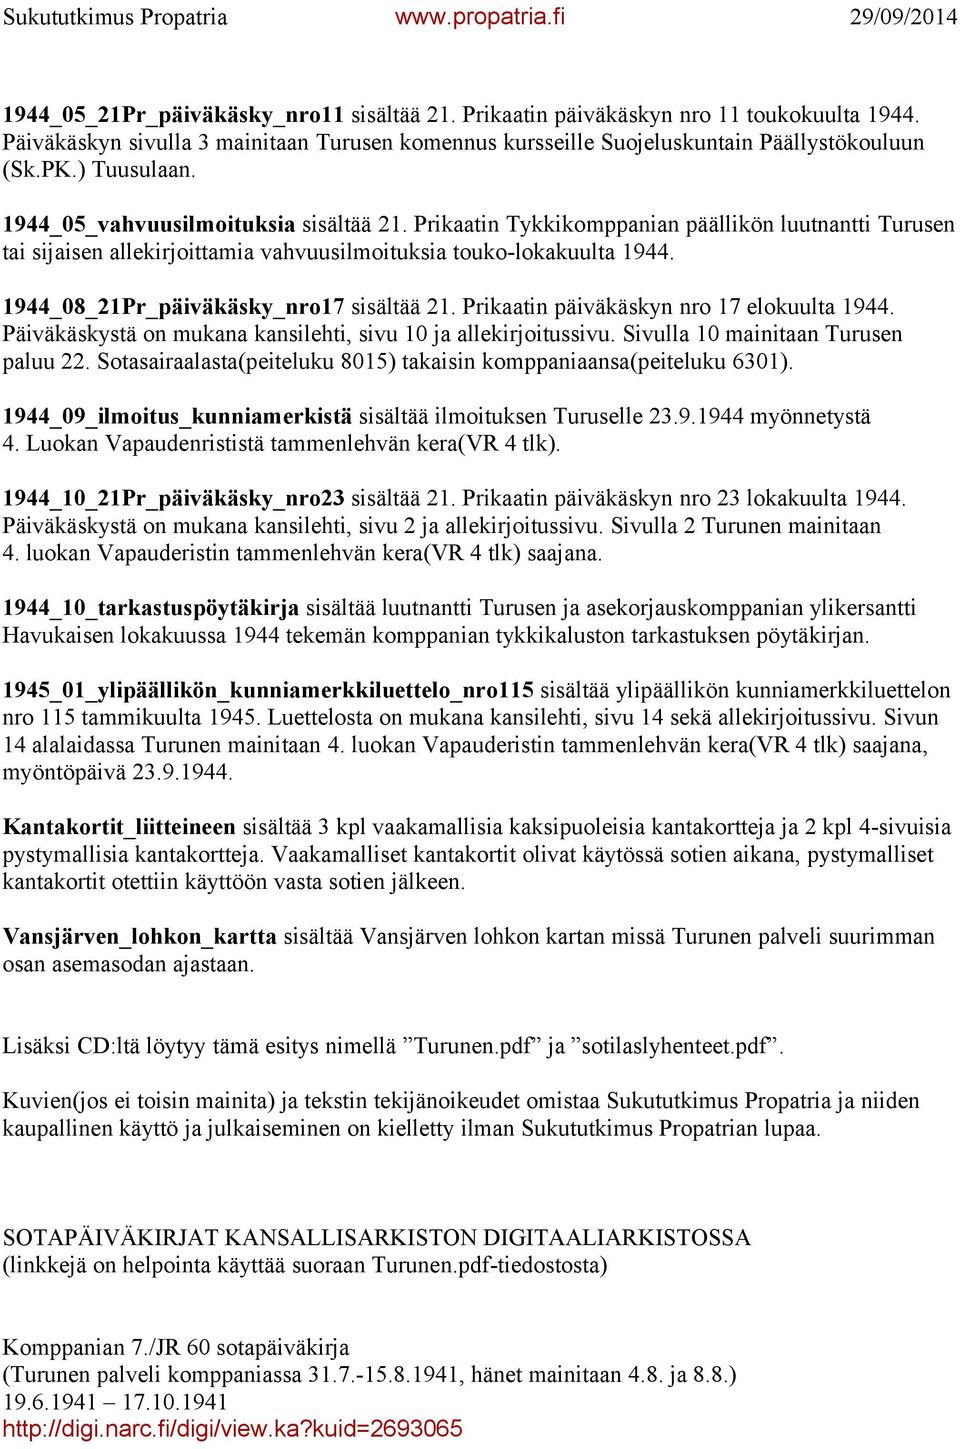 1944_08_21Pr_päiväkäsky_nro17 sisältää 21. Prikaatin päiväkäskyn nro 17 elokuulta 1944. Päiväkäskystä on mukana kansilehti, sivu 10 ja allekirjoitussivu. Sivulla 10 mainitaan Turusen paluu 22.